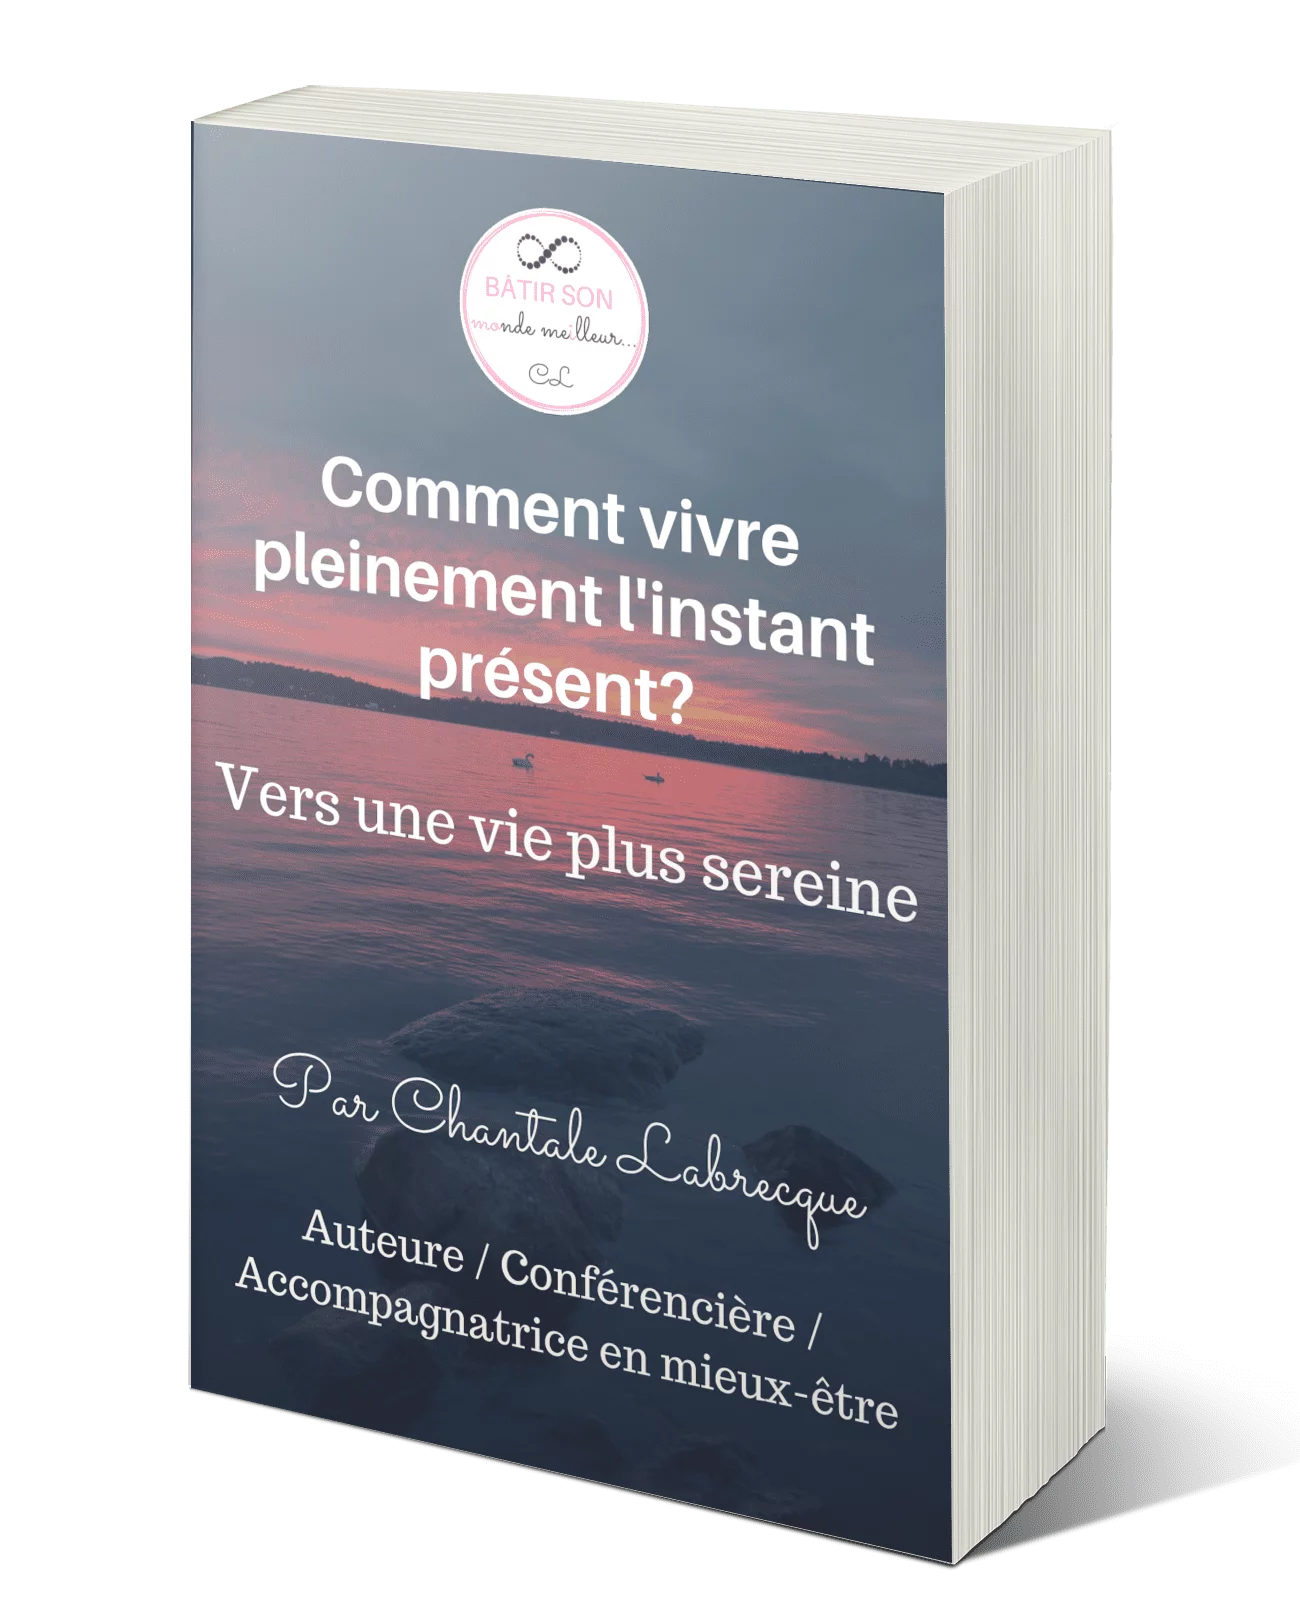 Guide Comment vivre linstant present Chantale Labrecque